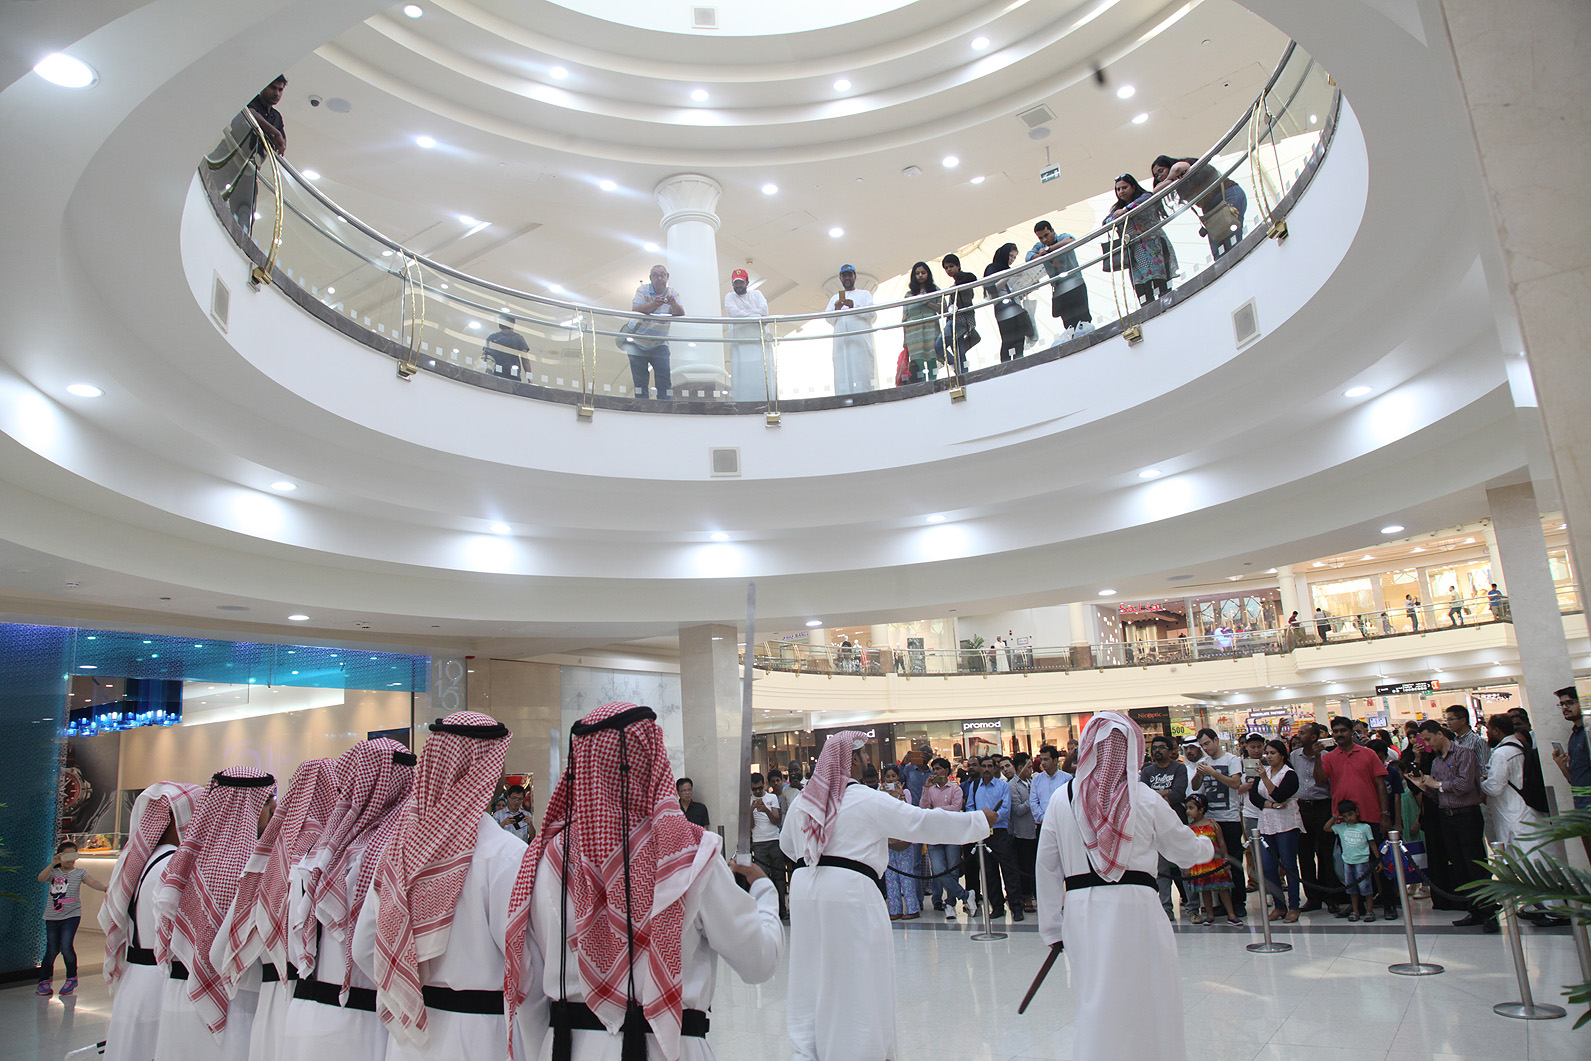 باقة من العروض المتنوعة للأشقاء السعوديين في دبي